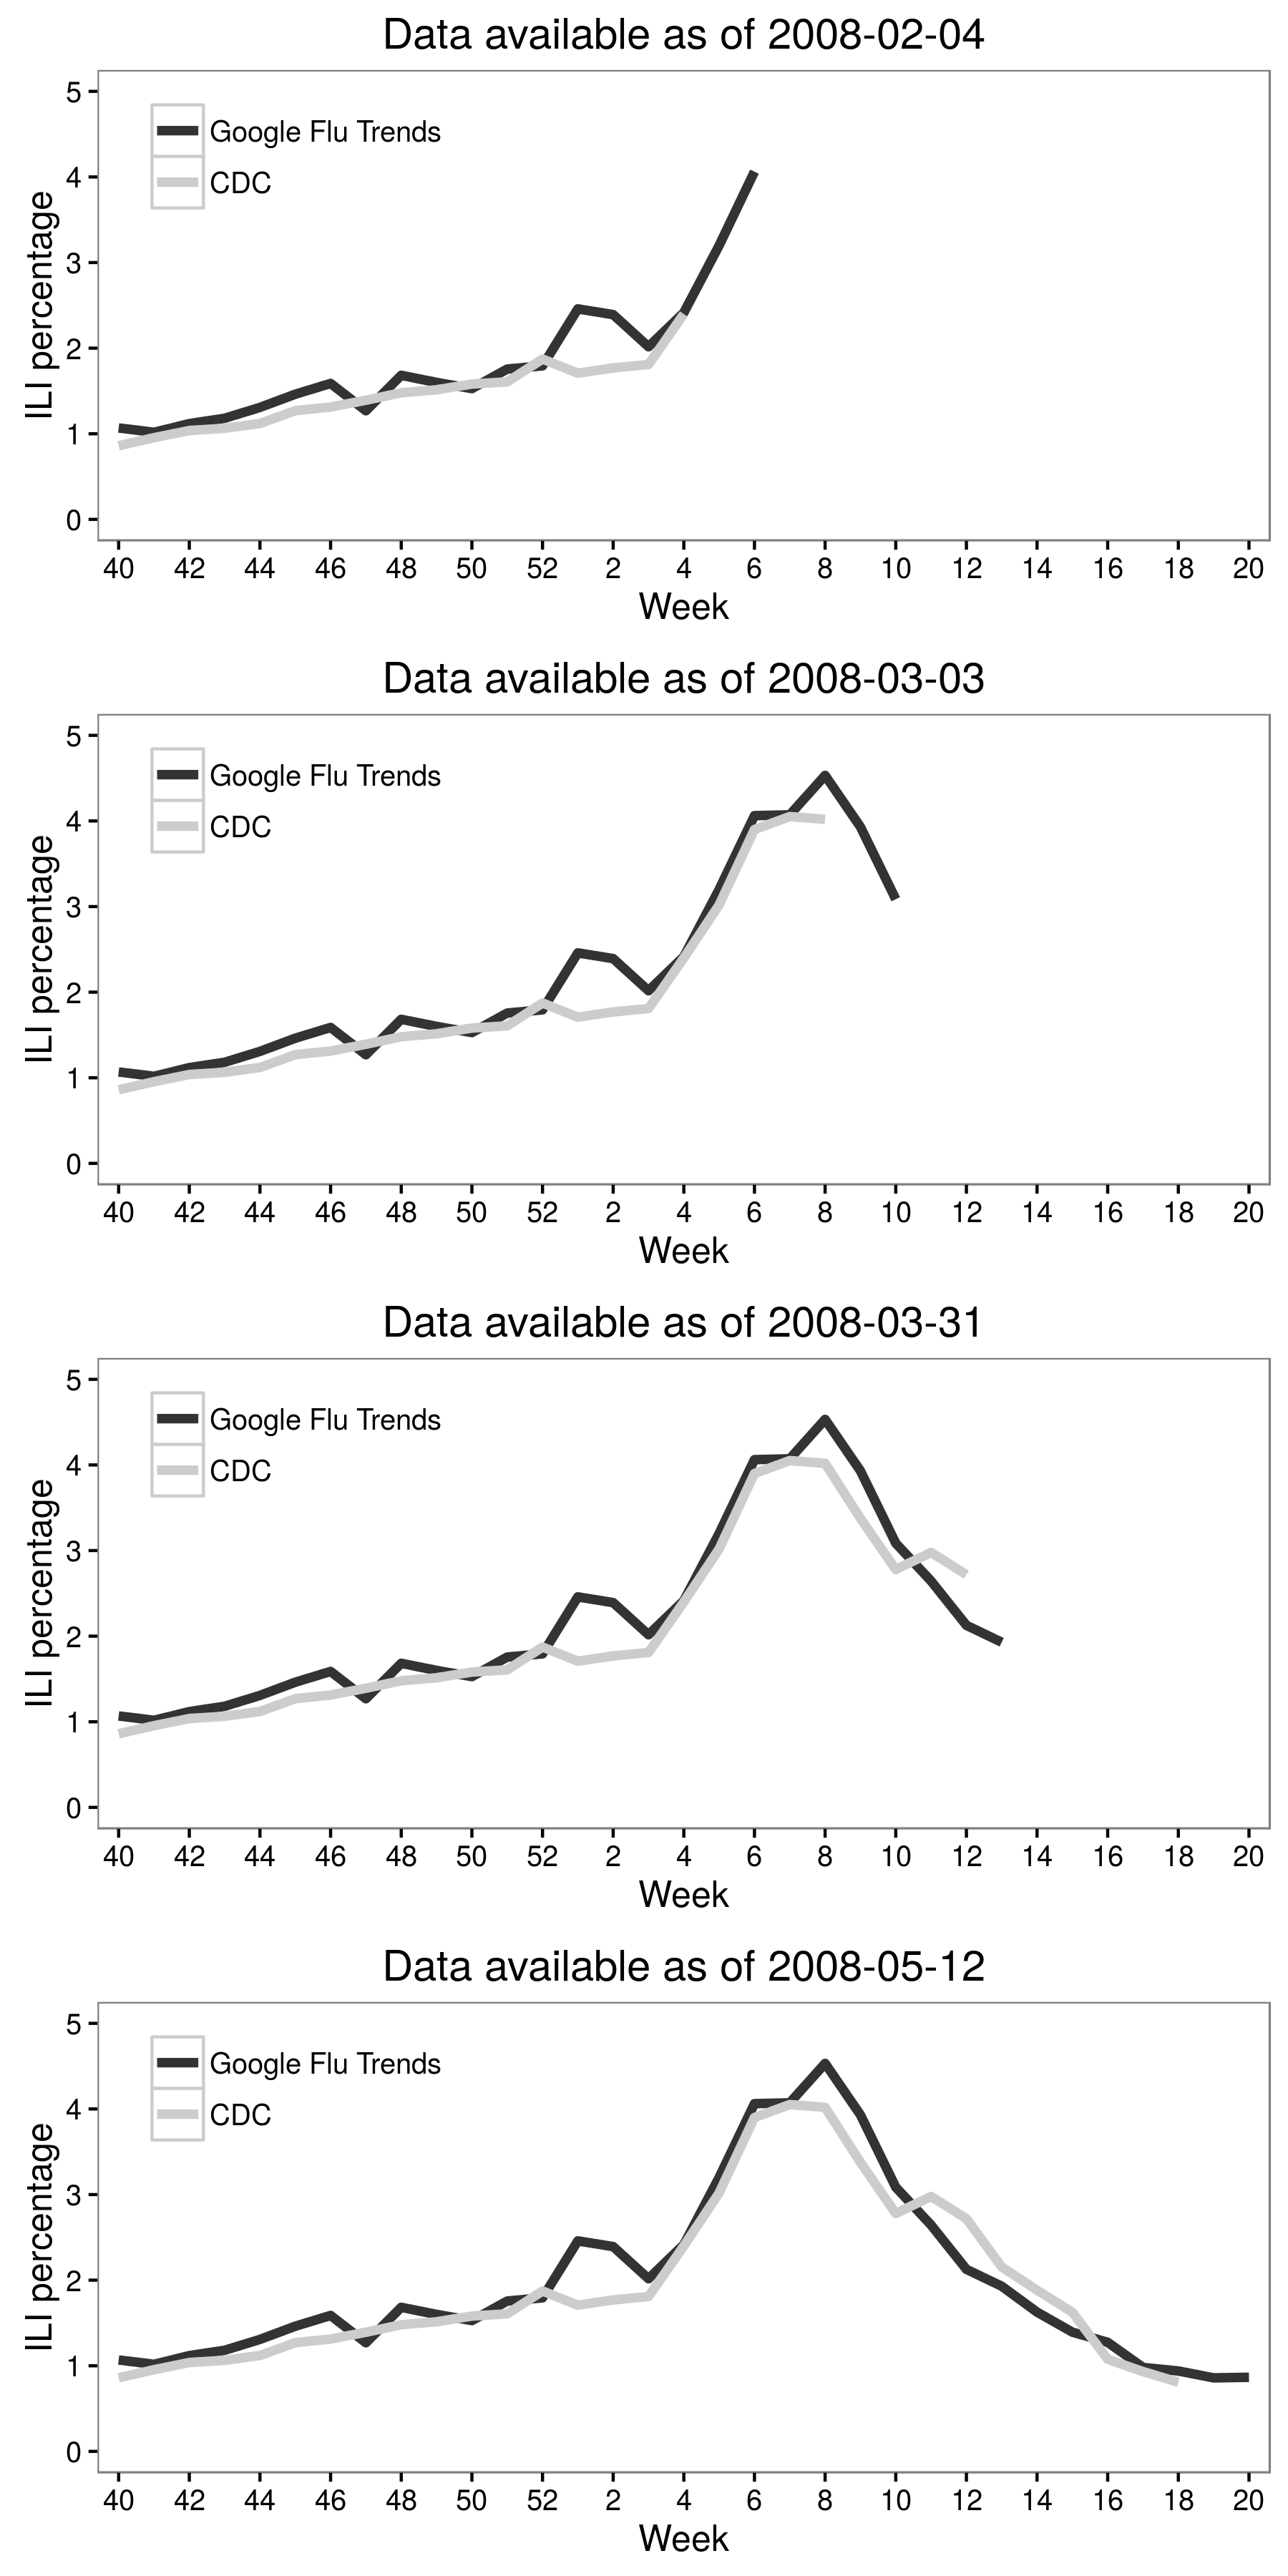 2.6 pav.: Jeremy Ginsbergas ir jo kolegos (2009 m.) Kartu su "Google" paieškos duomenimis su CDC duomenimis sukūrė "Google" gripo tendencijas, kurios dabar galėtų parodyti gripo tipo ligos (ILI) greitį. Šio skaičiaus rezultatai yra JAV vidurio Atlanto regione gripo sezonu 2007-2008 m. Nors iš pradžių buvo labai daug žadančių, "Google" gripo tendencijų veikimas laikui bėgant sumažėjo (Cook ir kt., 2011; Olson ir kt. 2013; Lazer ir kt., 2014). Adaptuota iš Ginsberg ir kt. (2009), 3 pav.